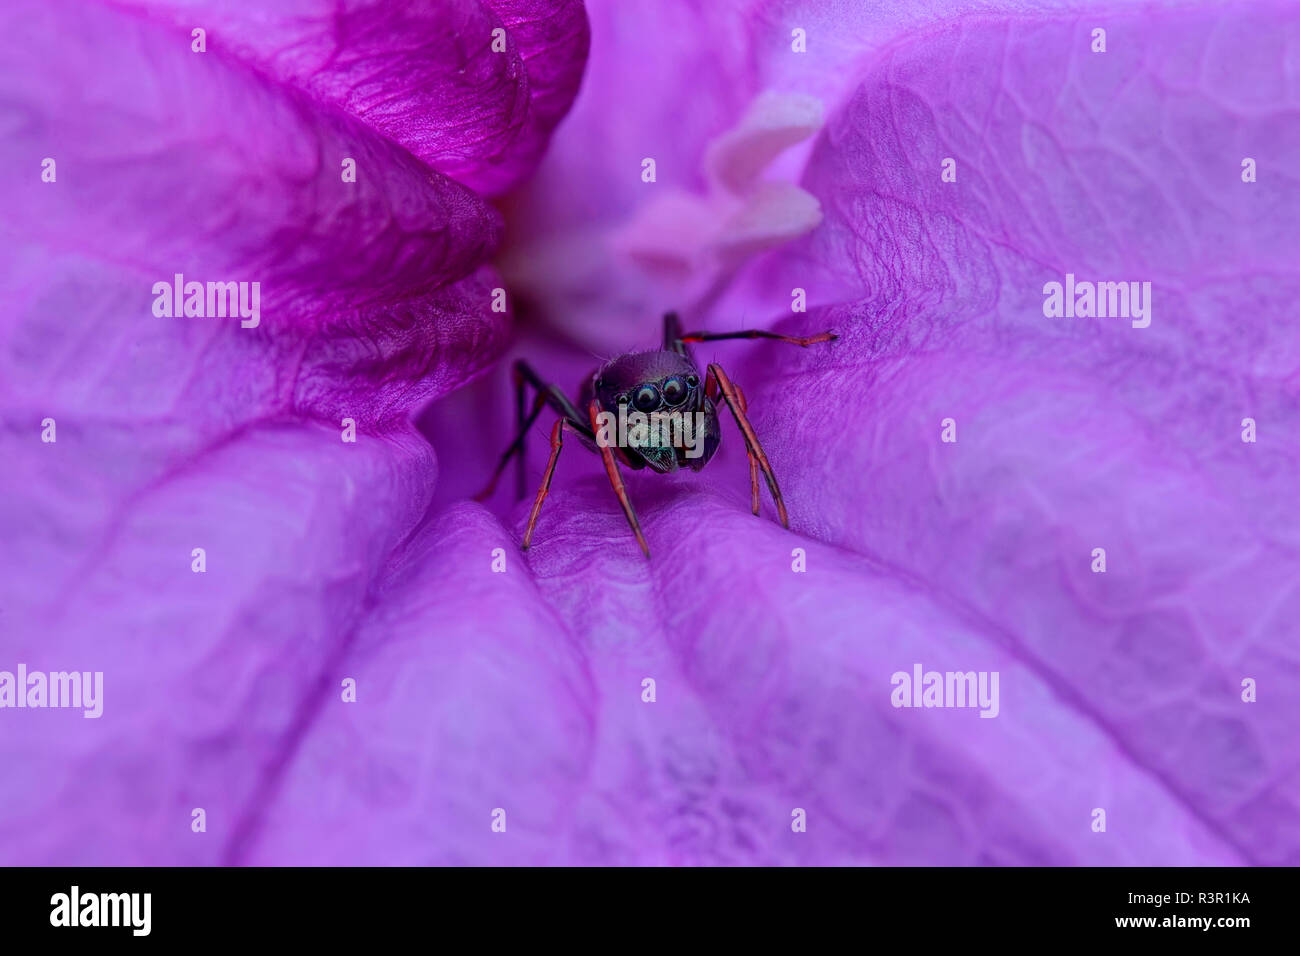 Una hembra ant-imitando saltar (araña Myrmarachne cornuta) ocultar dentro de flor morada. Foto de stock